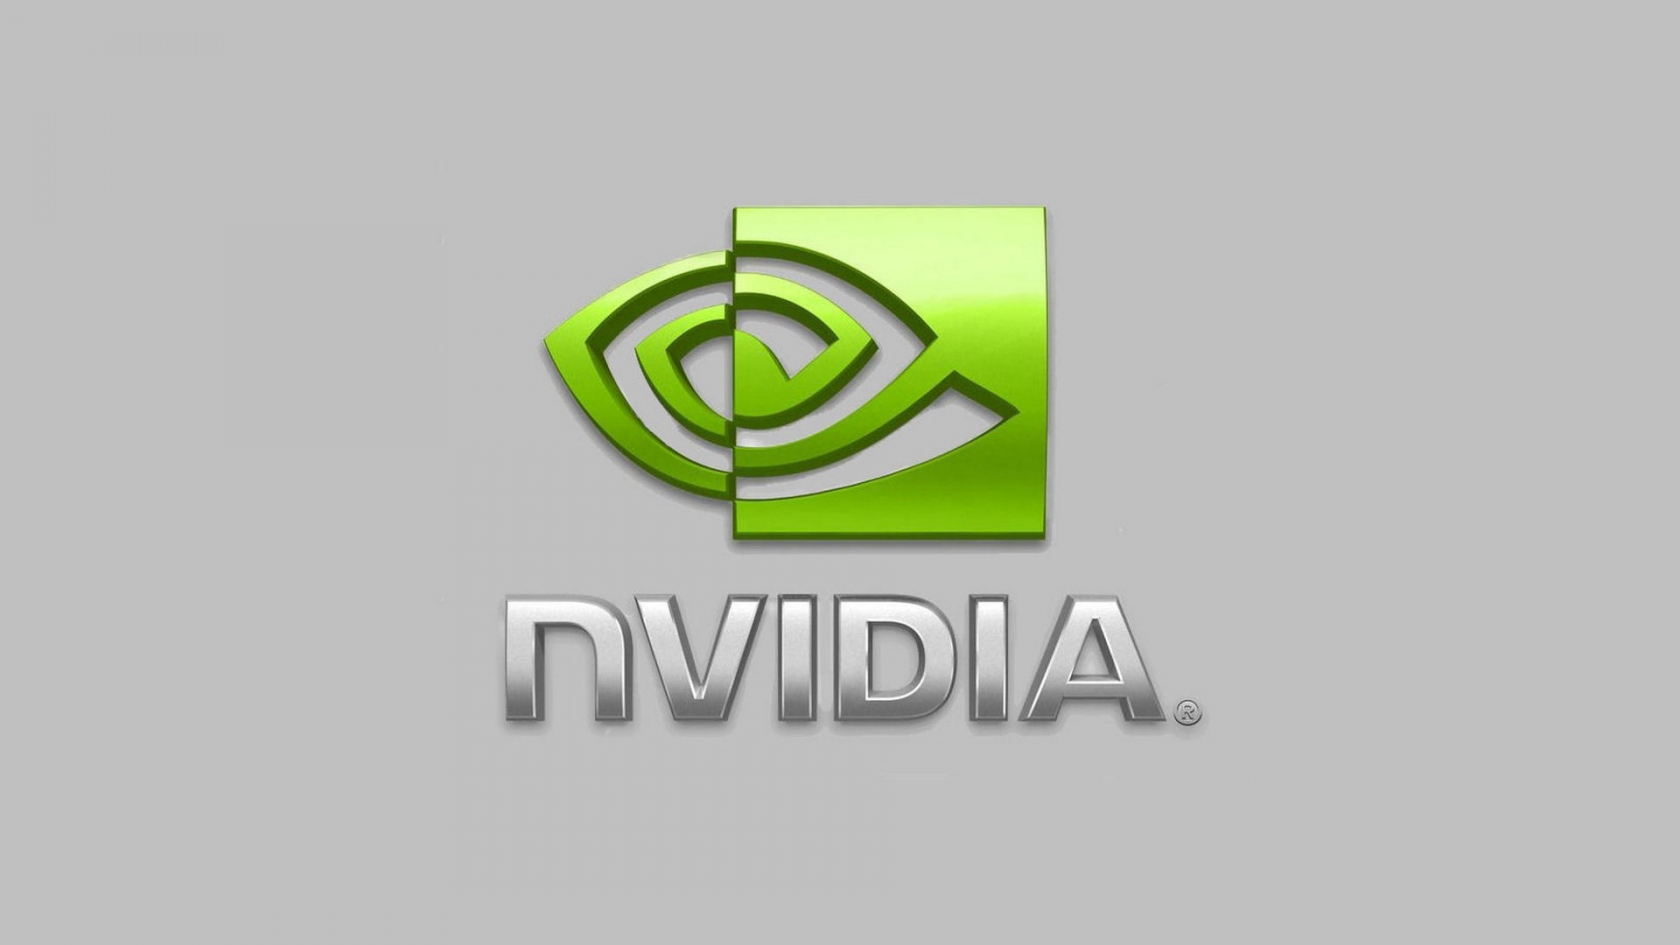 nVIDIA Logo for 1680 x 945 HDTV resolution